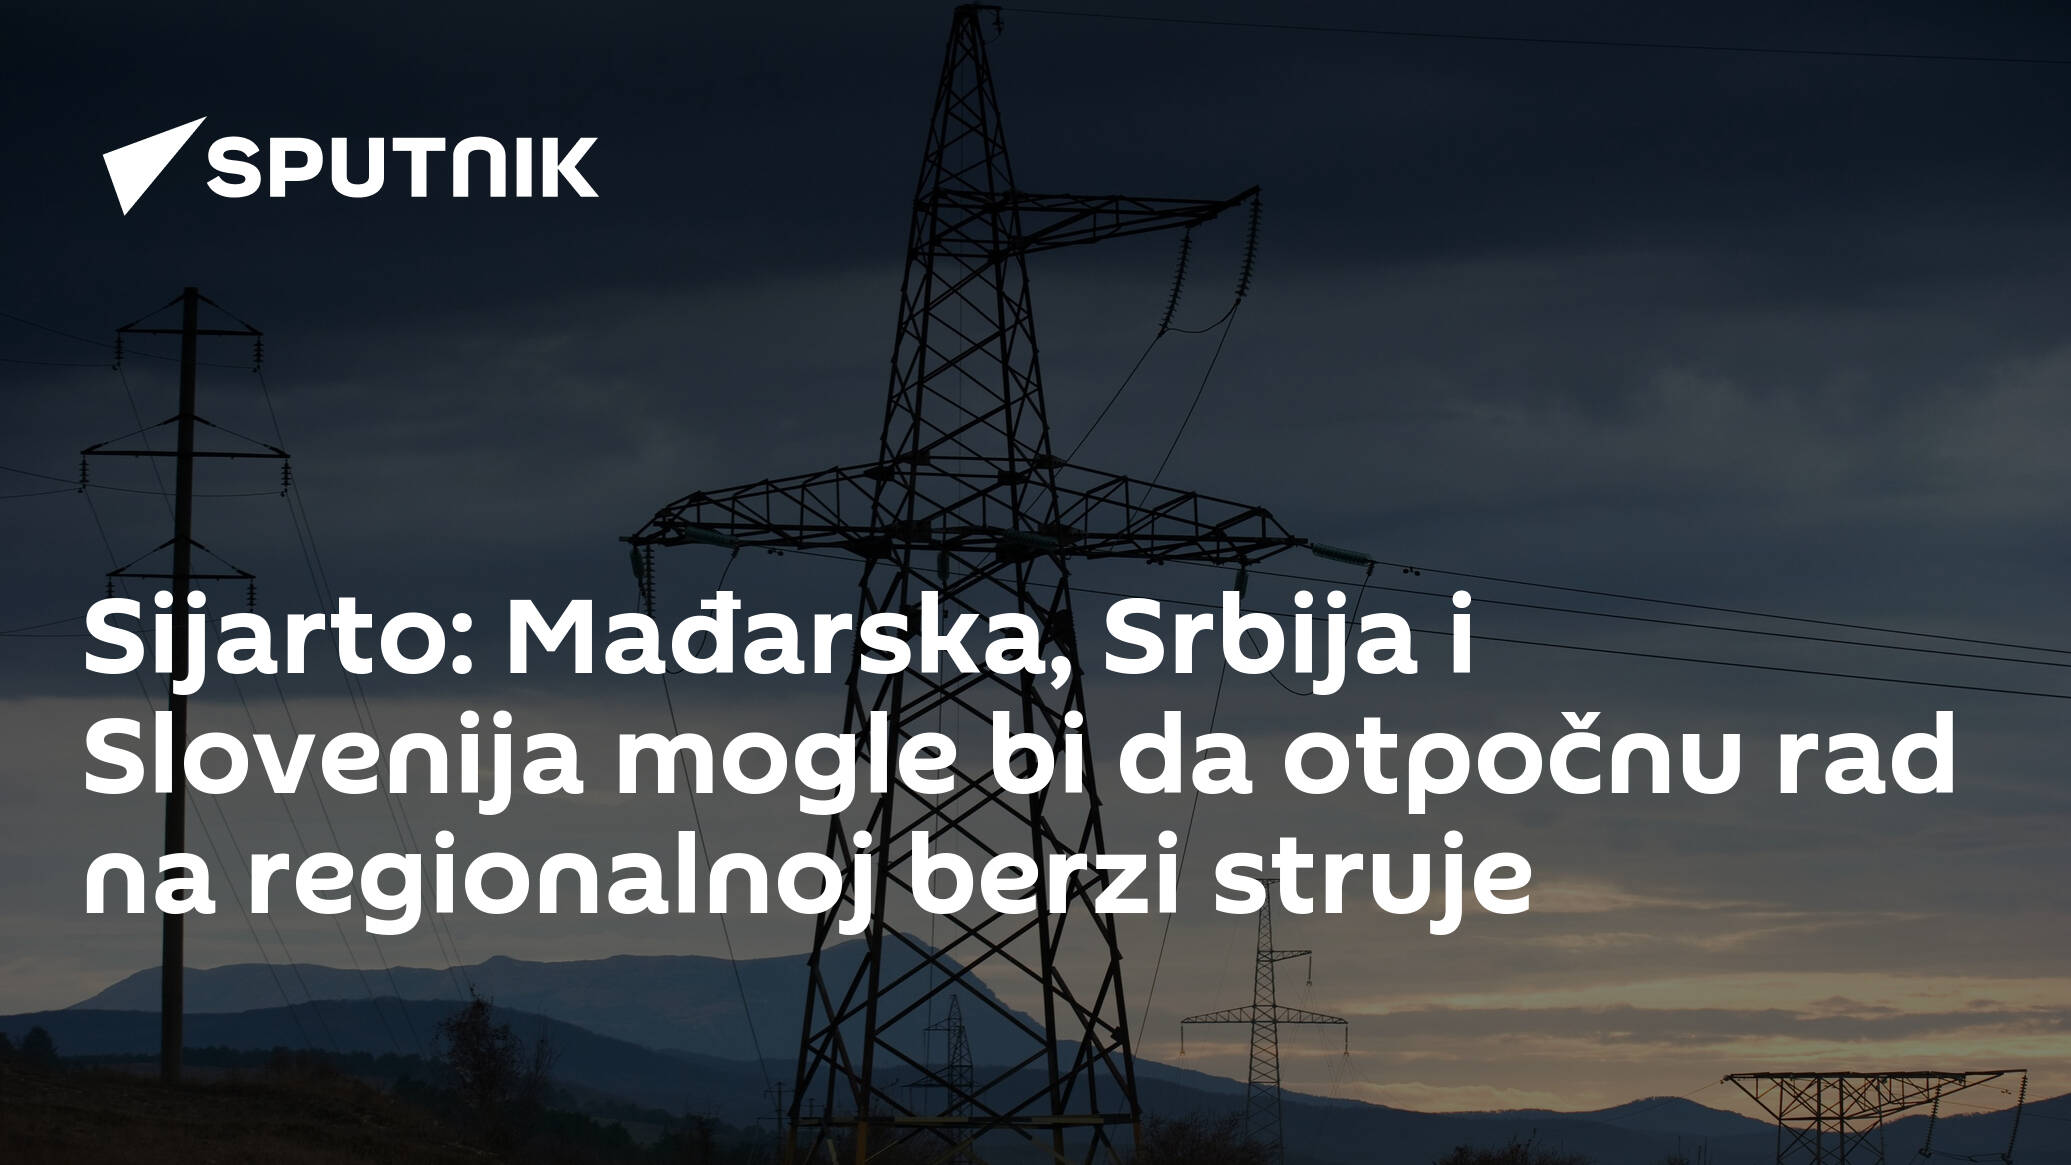 Sijarto: Mađarska, Srbija i Slovenija mogle bi da otpočnu rad na regionalnoj berzi struje